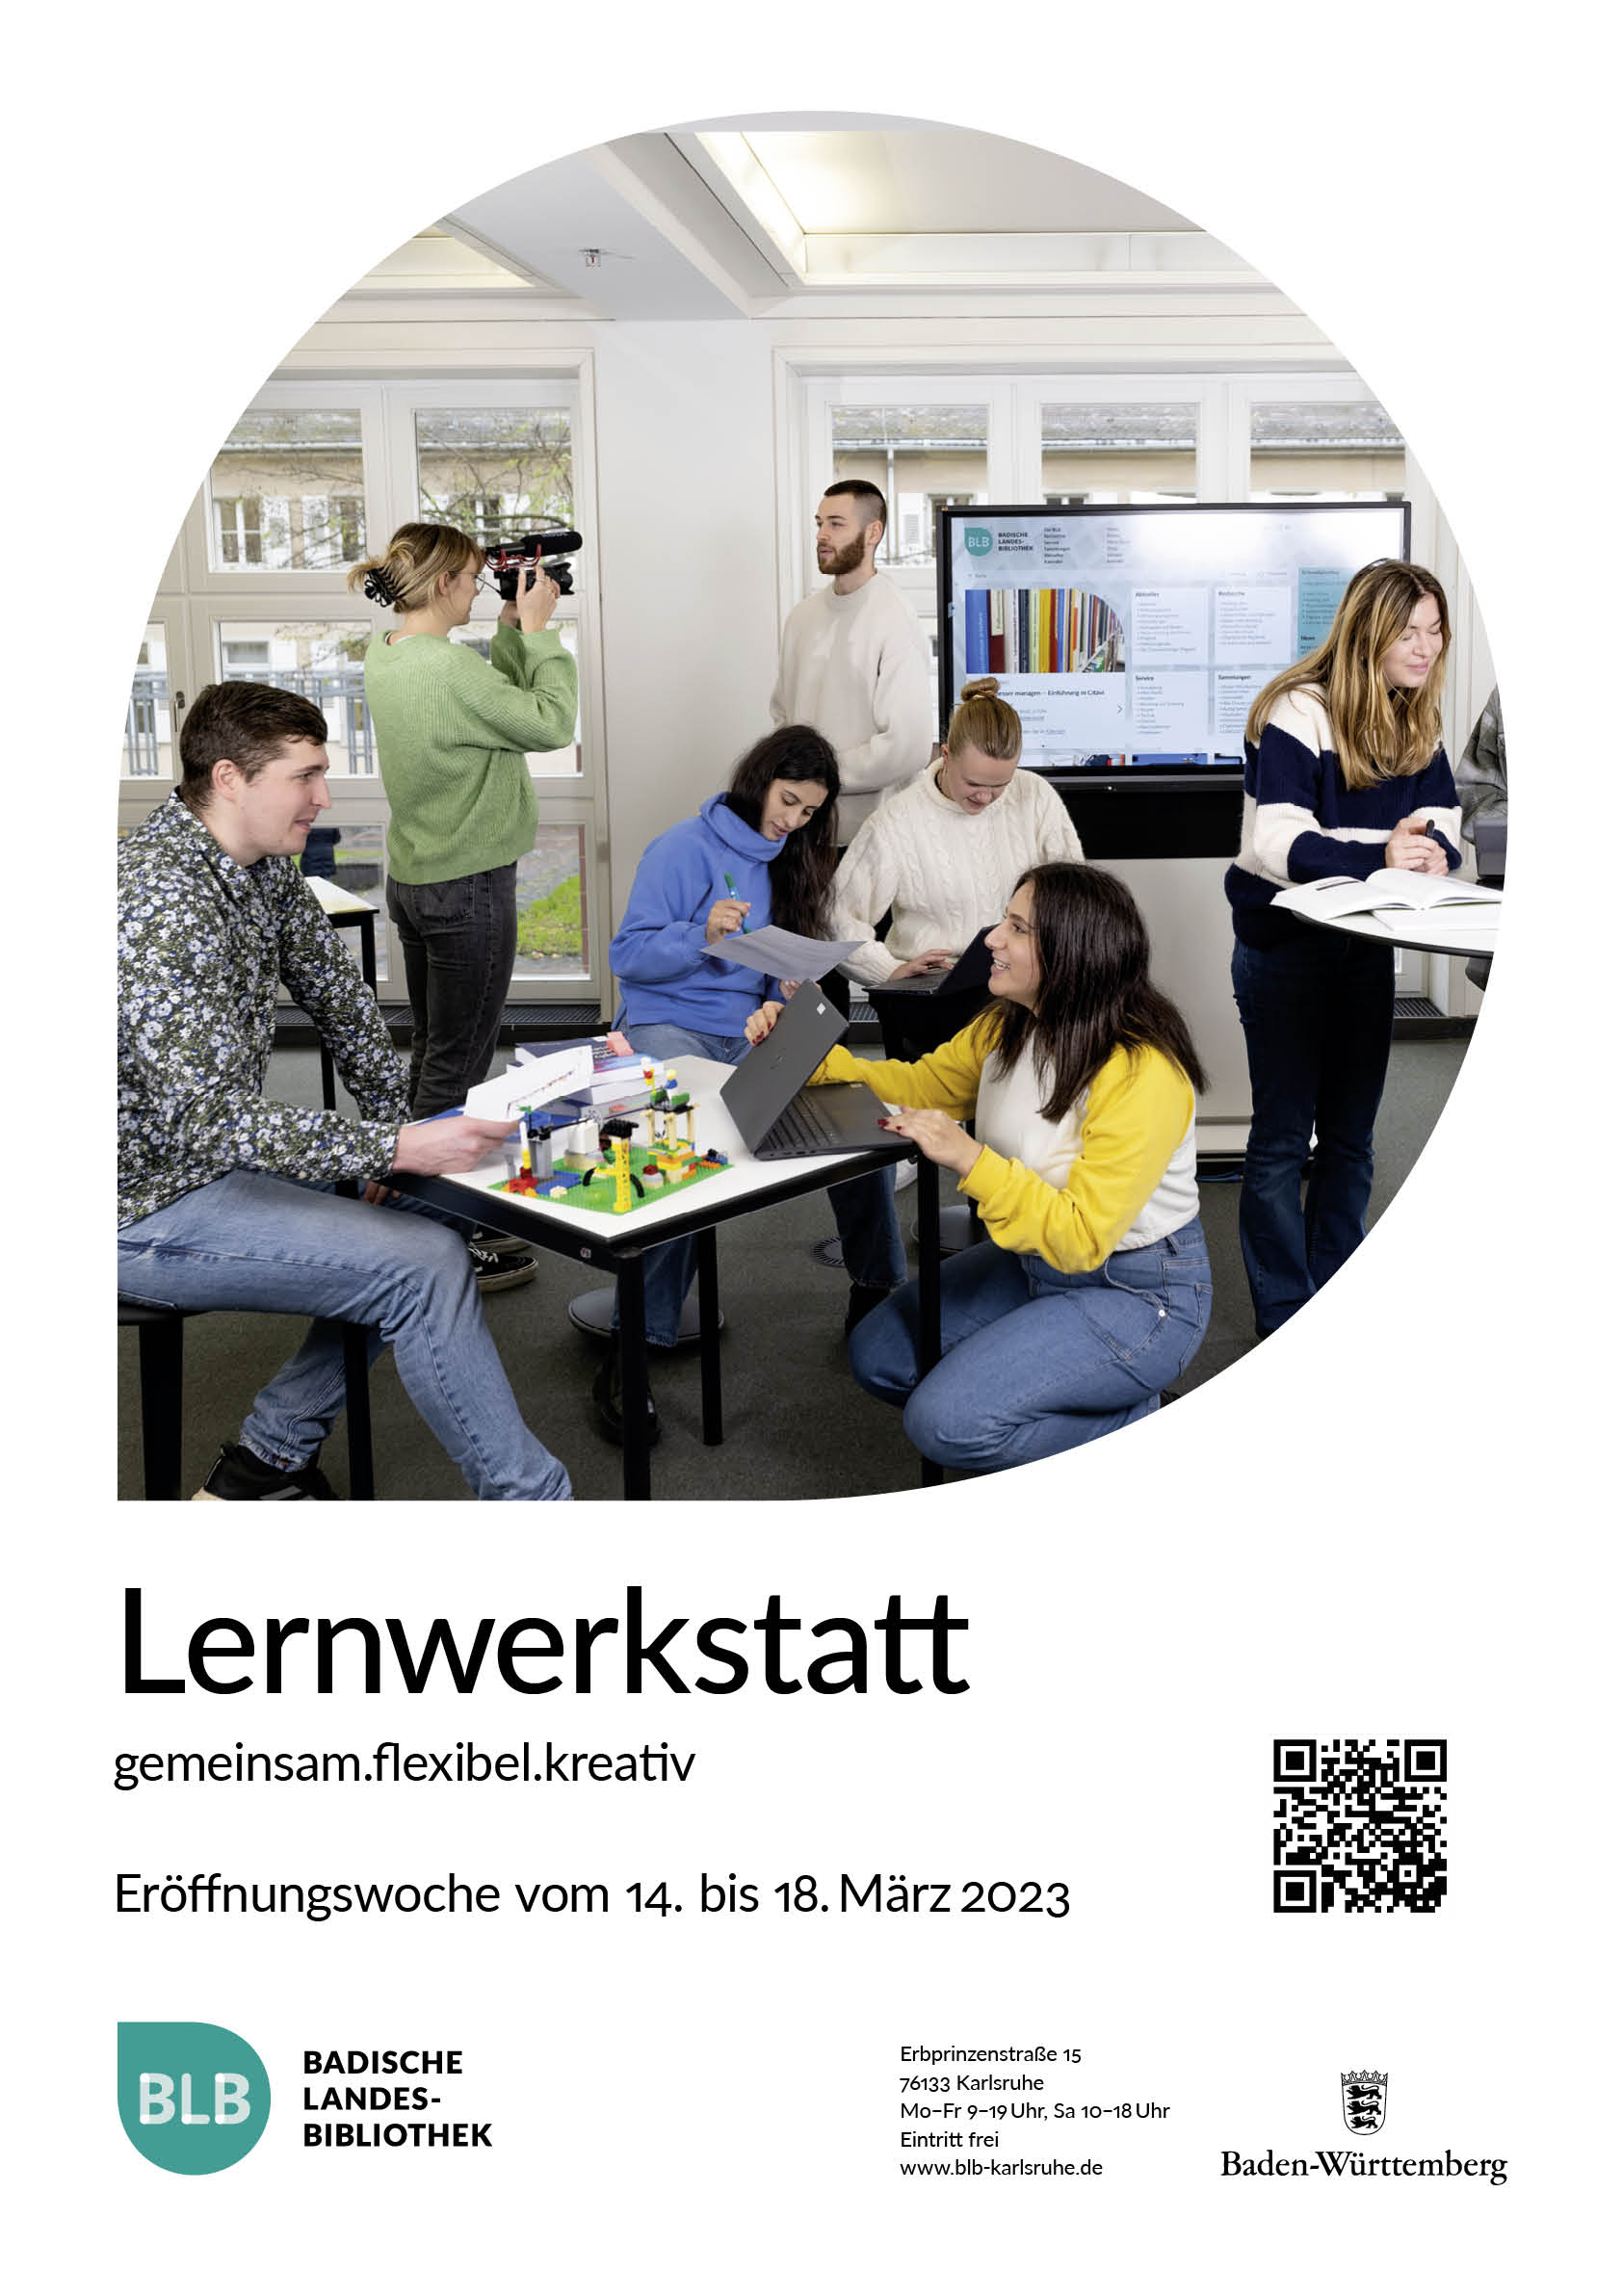 Das Plakat zur Eröffnung der Lernwerkstatt zeigt Jugendliche beim konzentrierten Lernen und Arbeiten. 